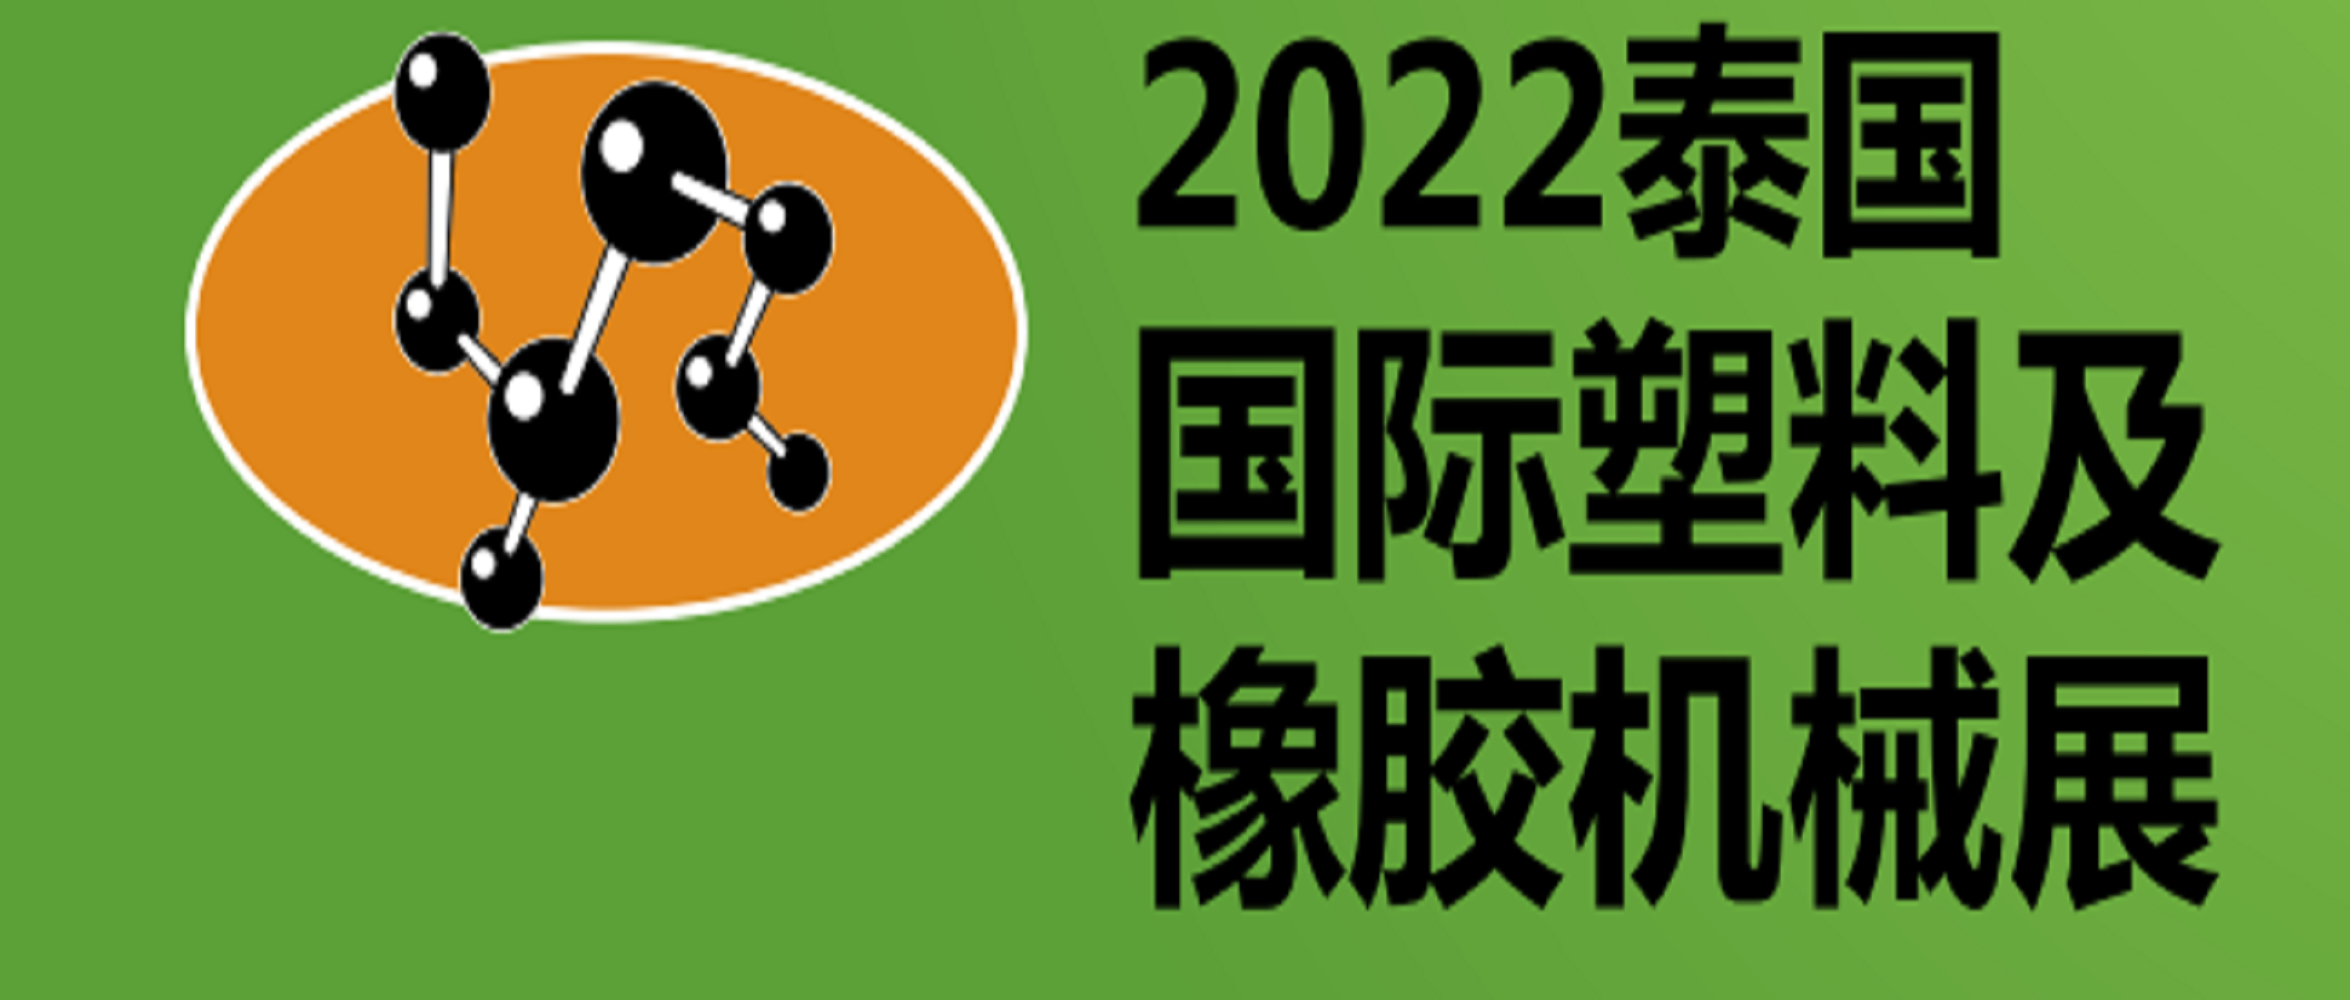 2022年第30届泰国国际塑料及橡胶机械展览会 INTERPLAS THAILAND 2022